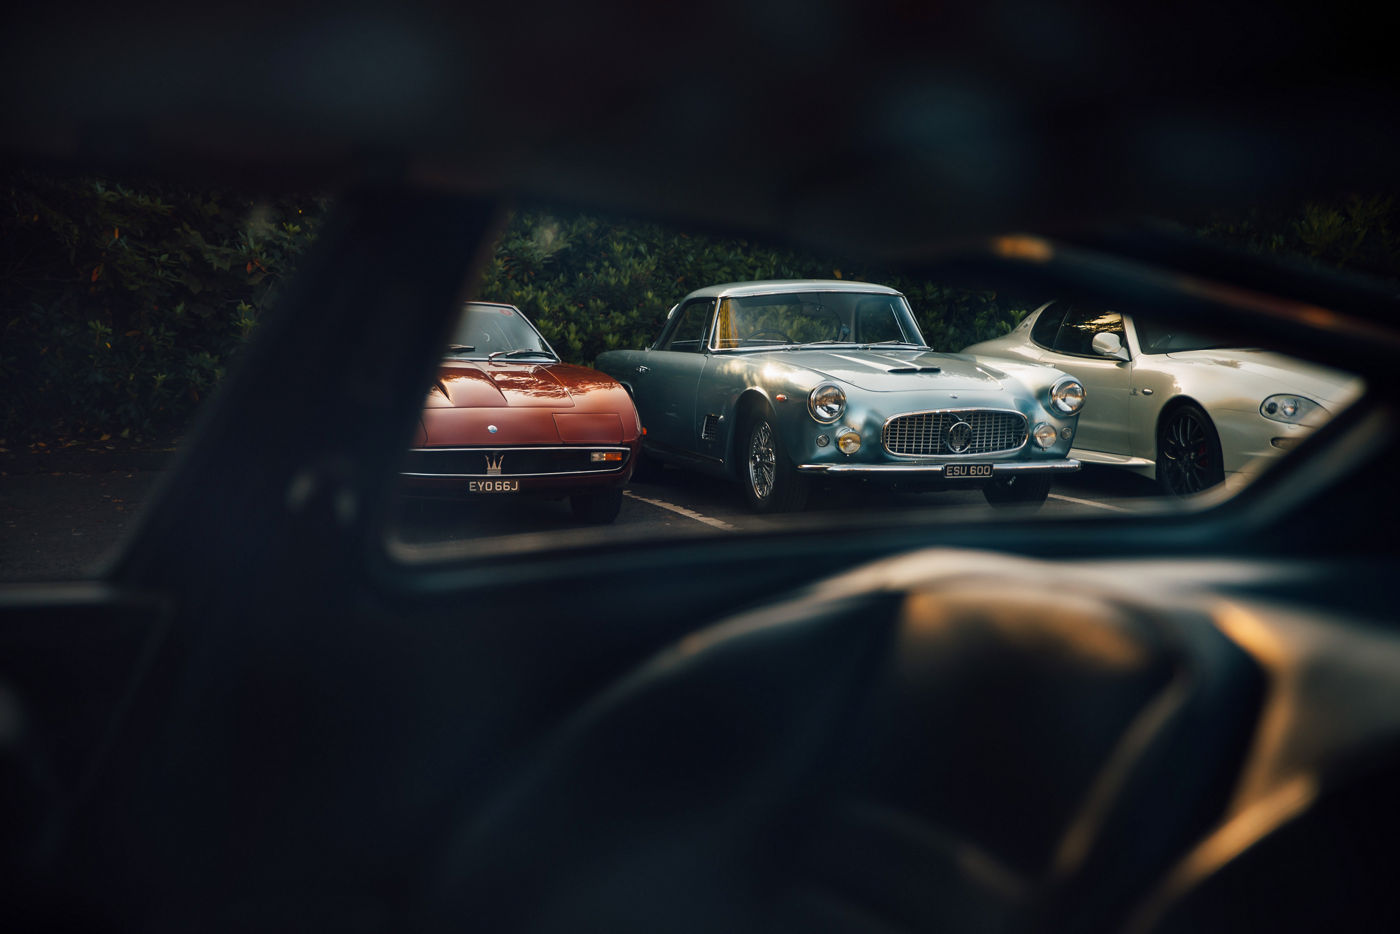 Modelos Maserati desde la ventana de un coche